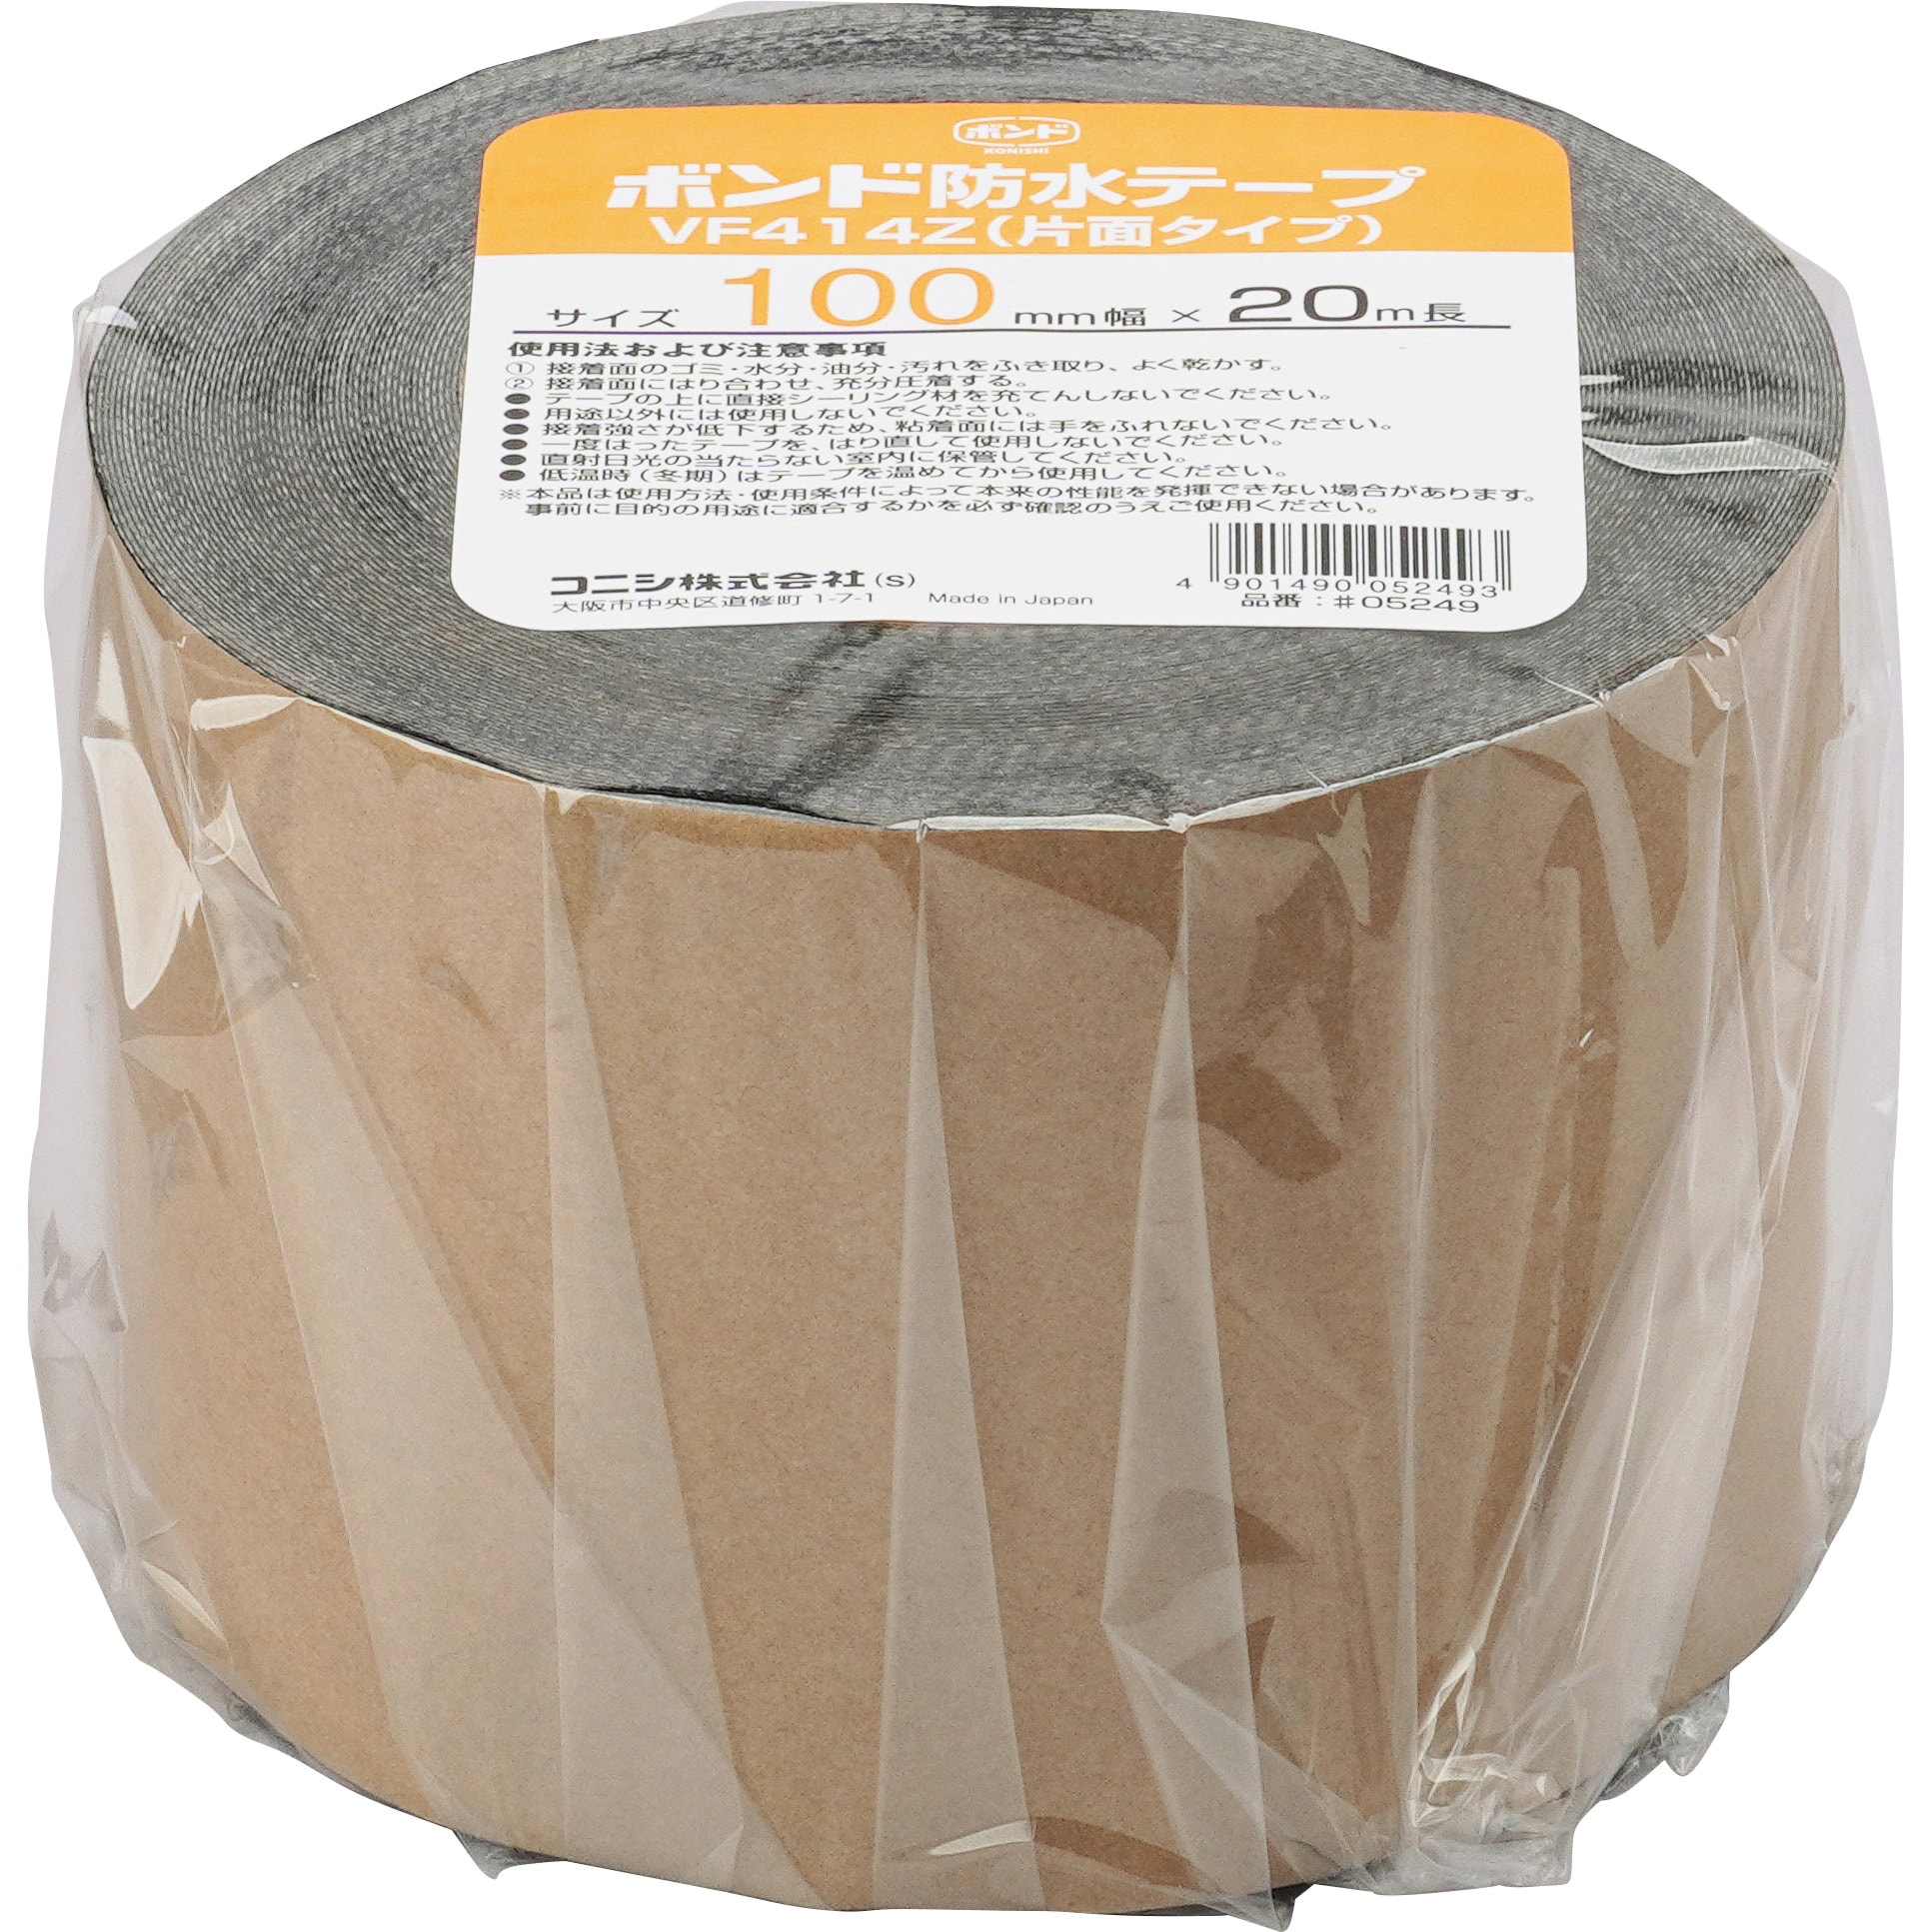 テープ 光洋化学 気密防水テープ エースクロス アクリル系強力粘着 片面テープ 011 白 100mm×20m 18巻セット - 3